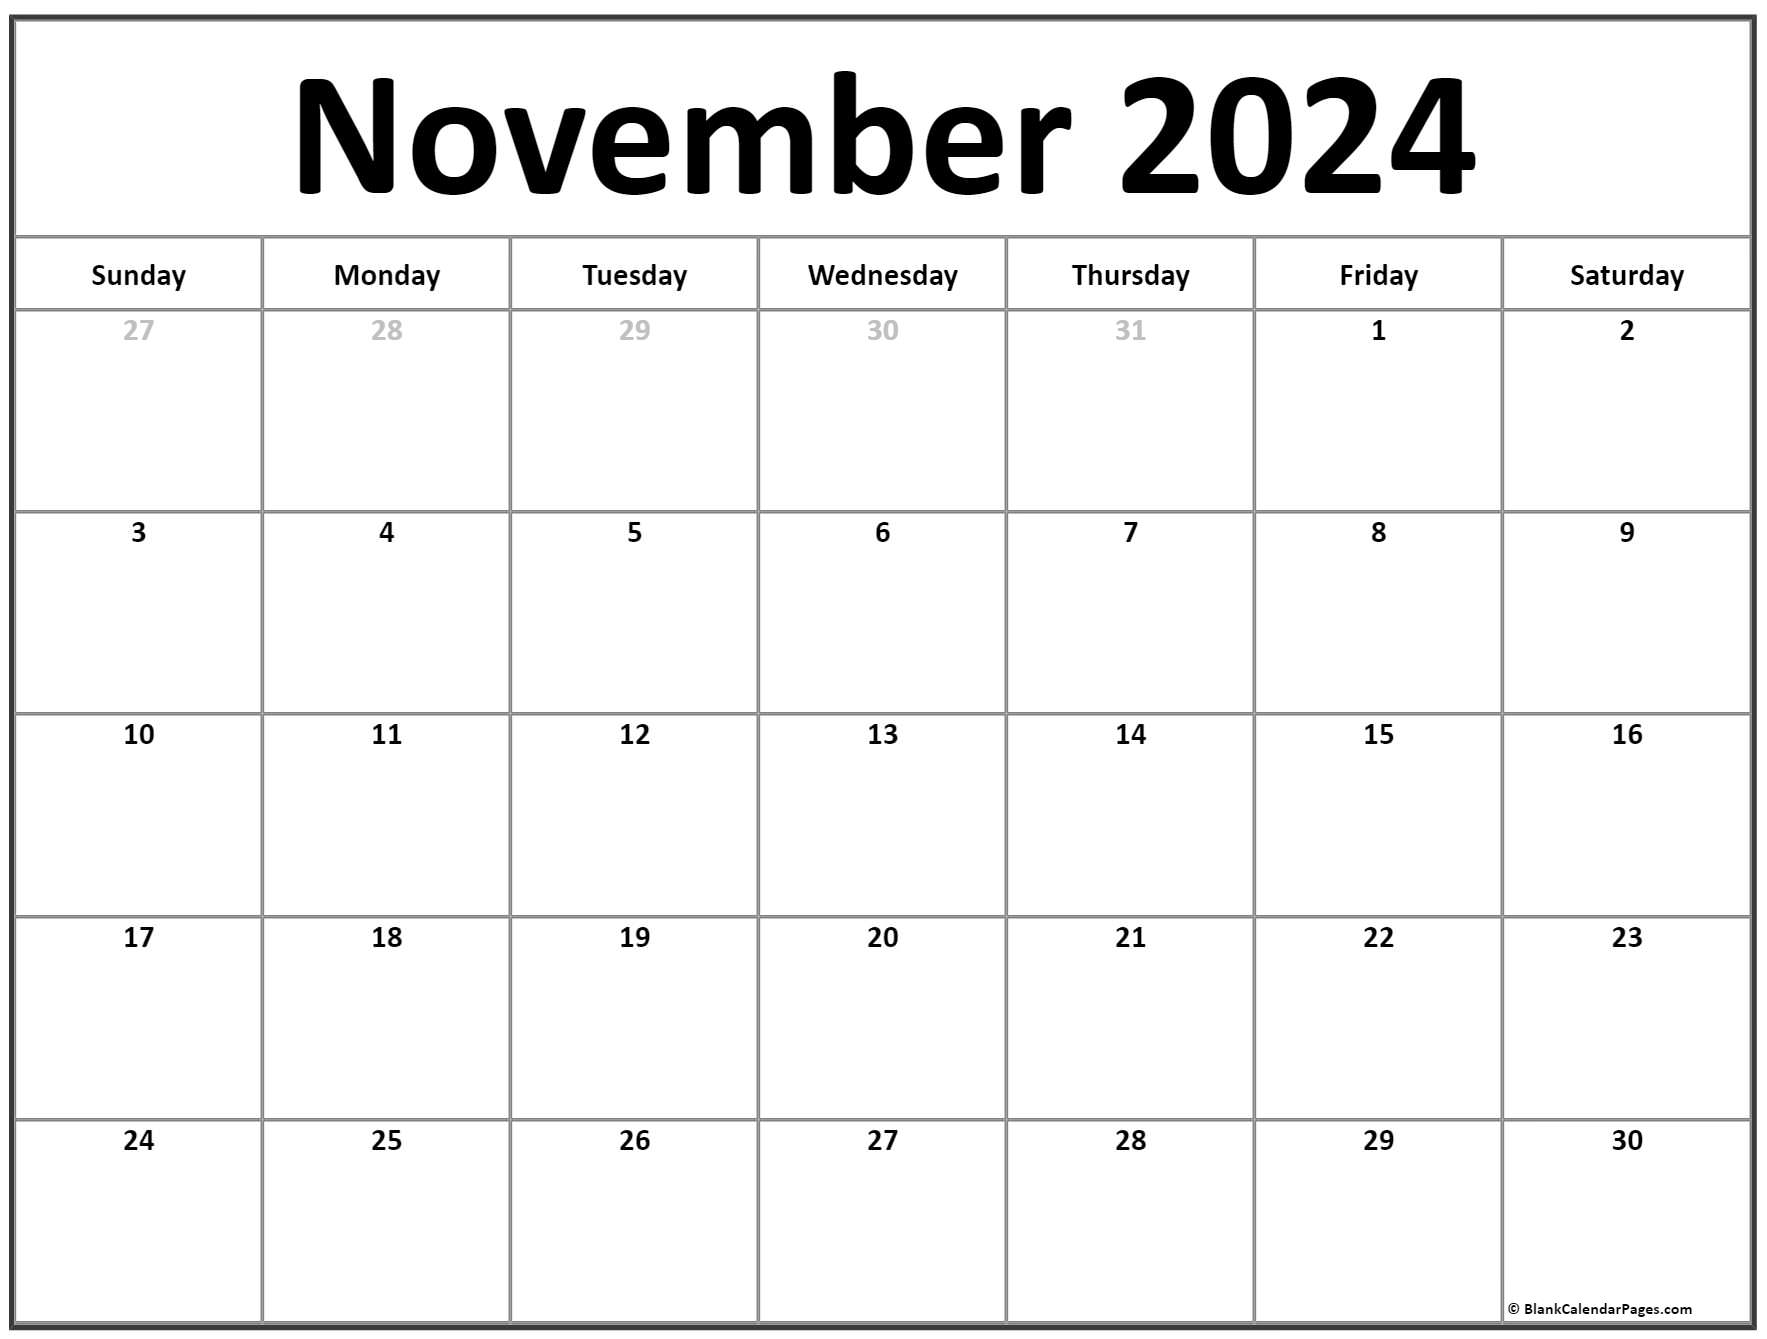 November 2022 calendar free printable calendar templates